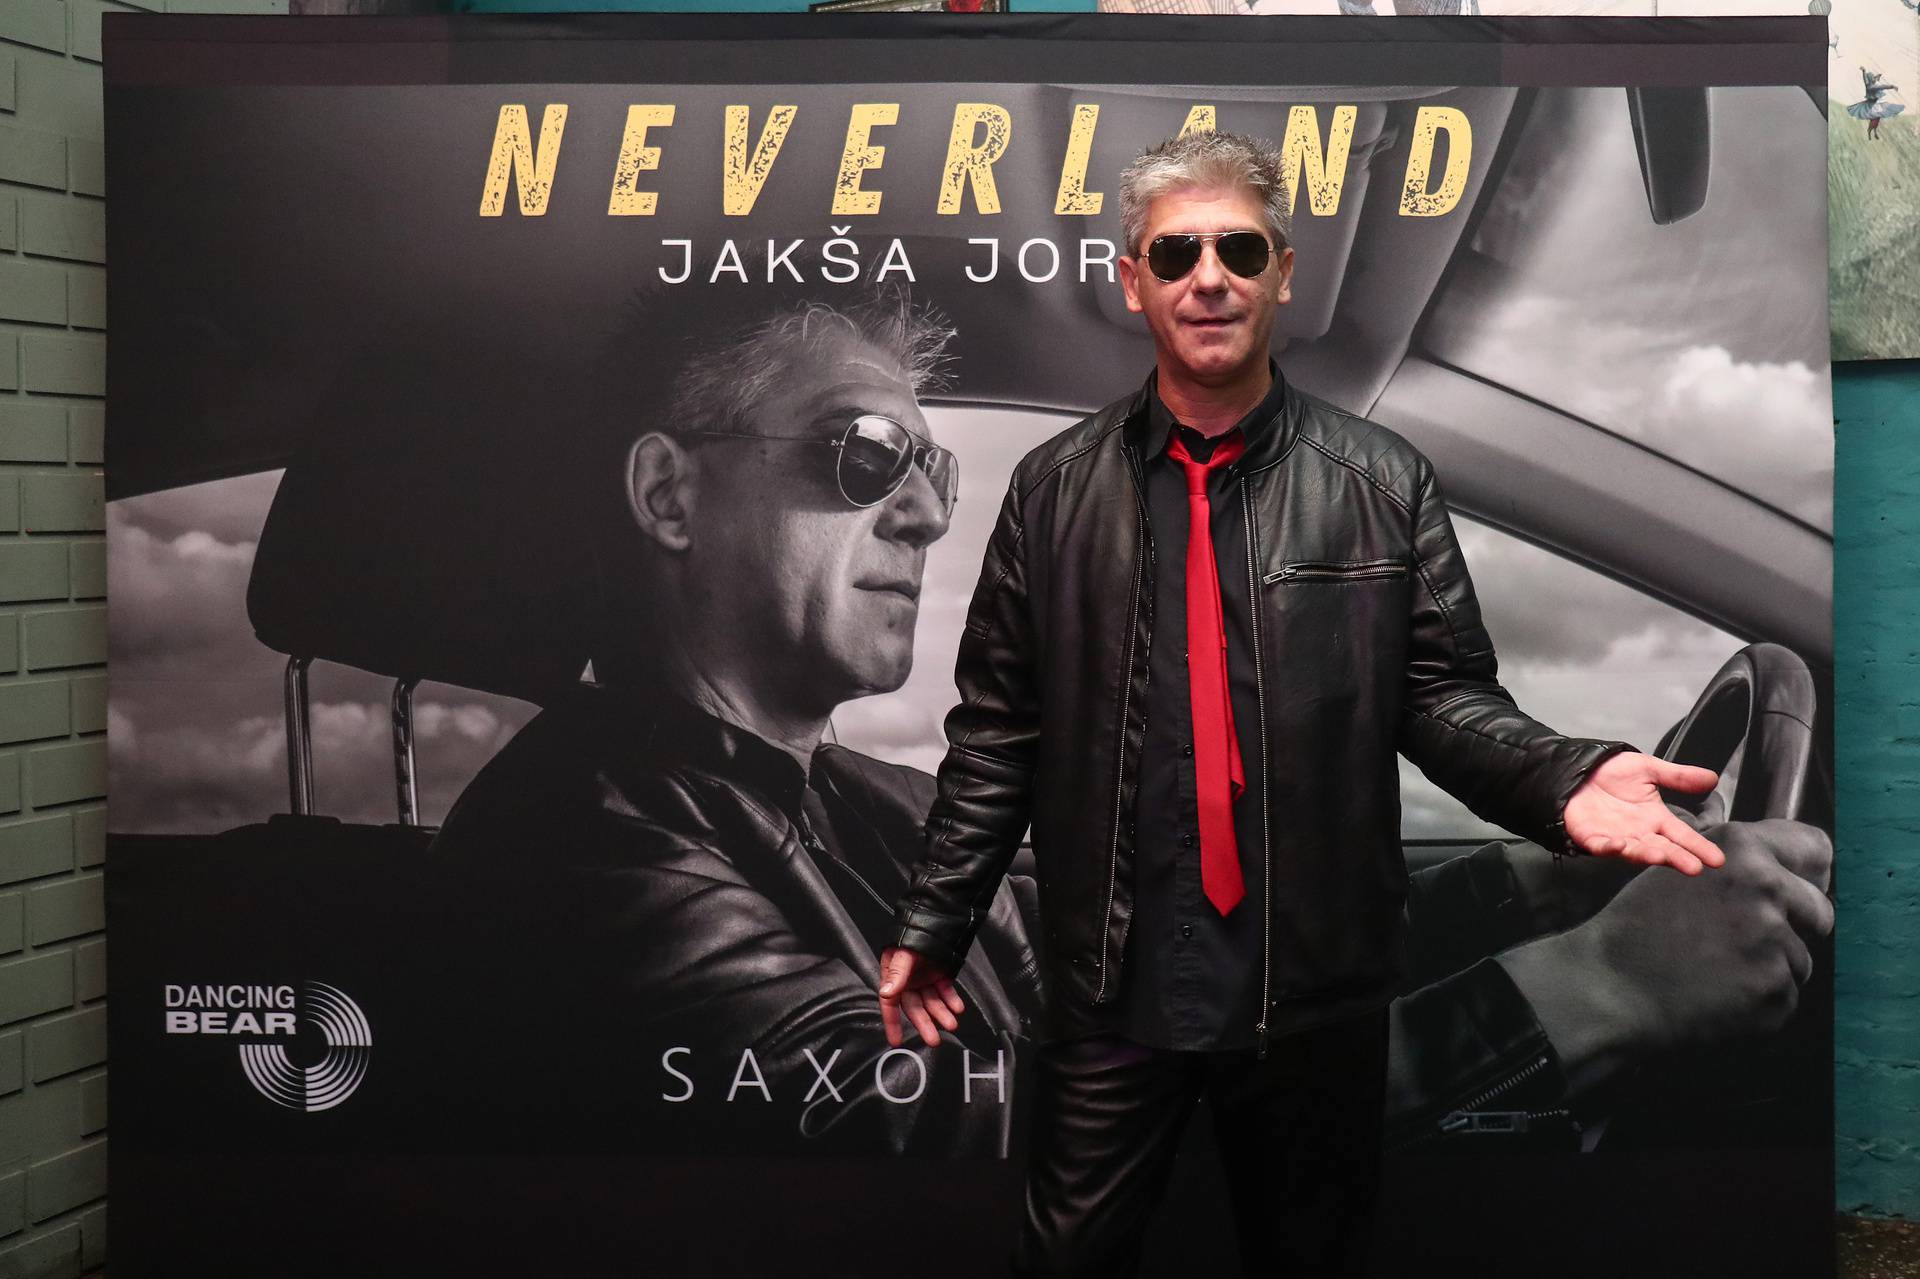 Zagreb: Promocija singla "Neverland" Jakše Jordesa